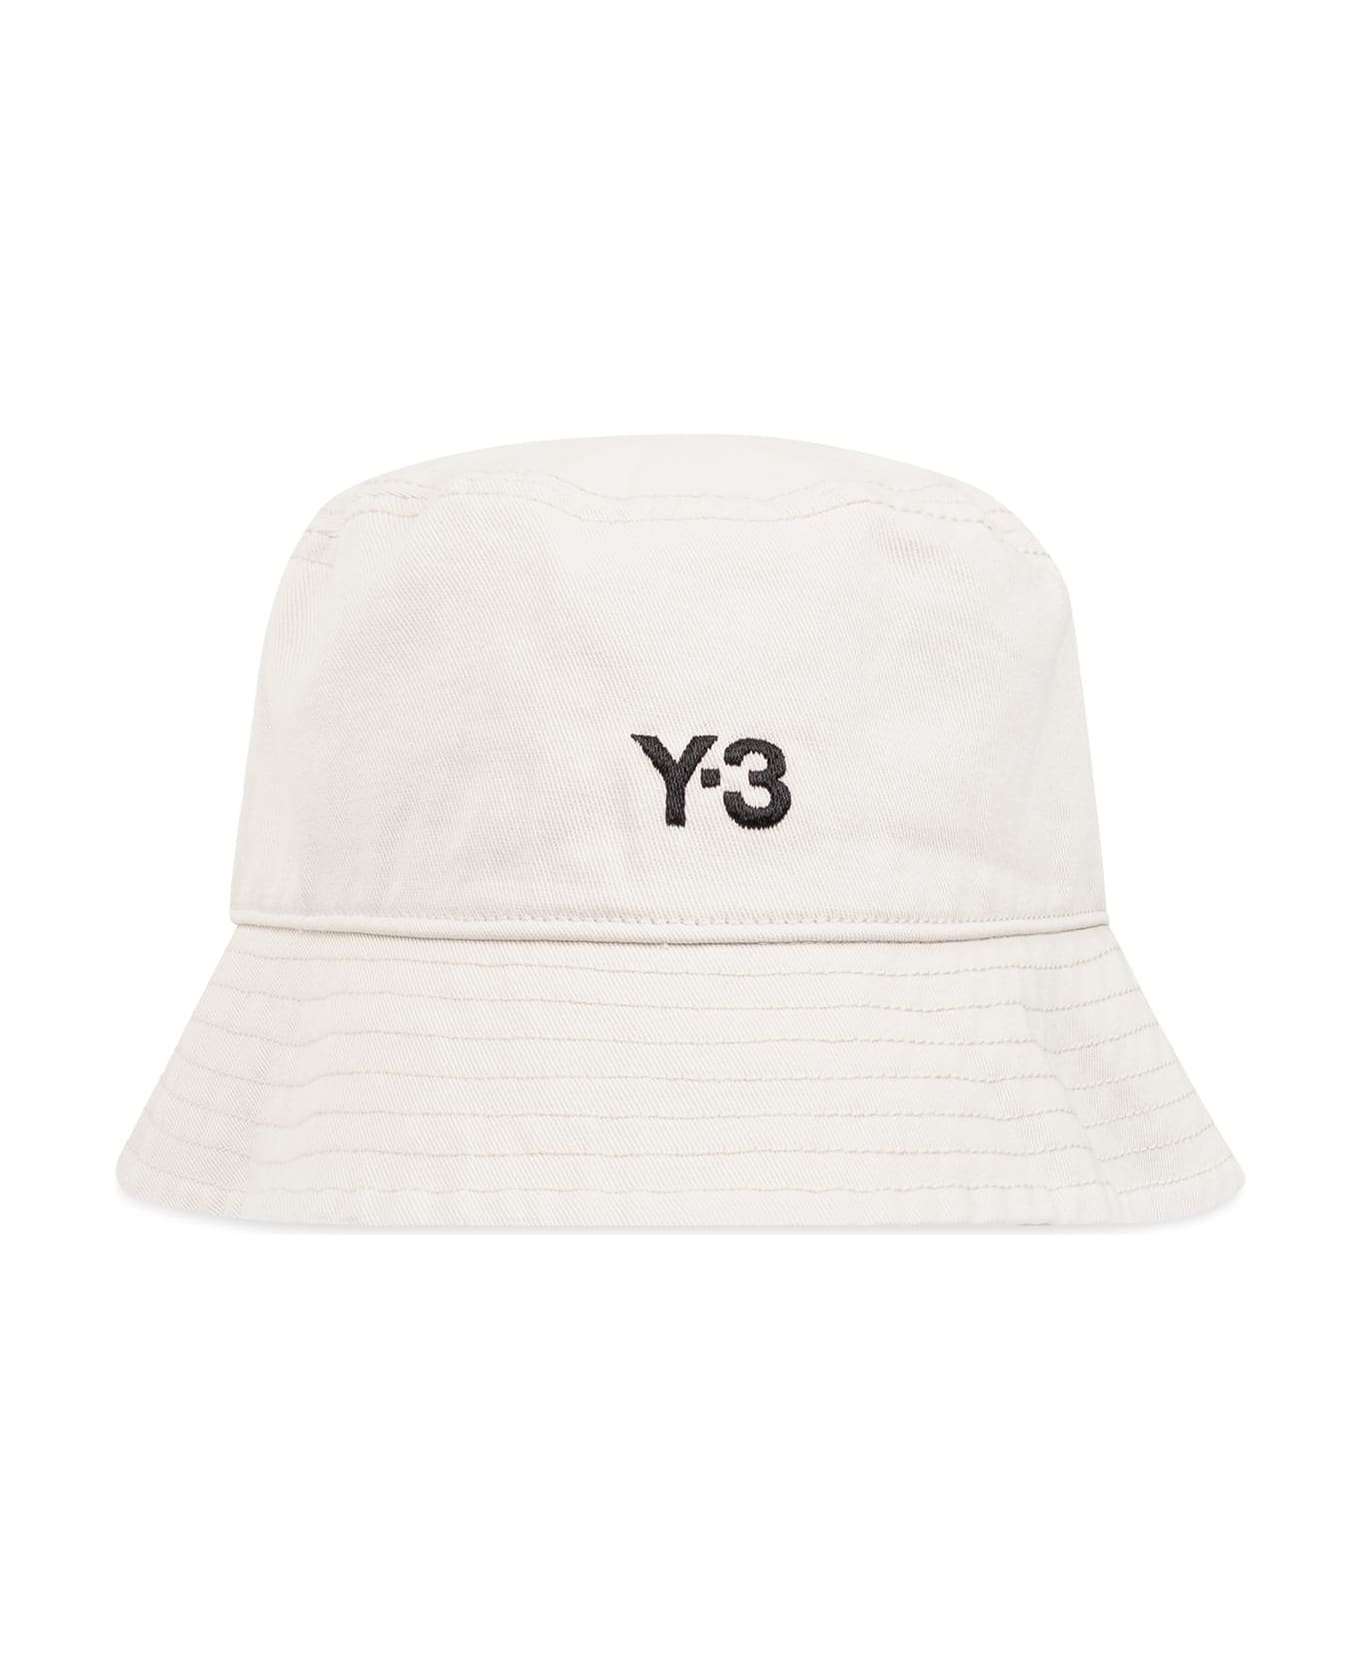 Y-3 Bucket Hat With Logo 帽子